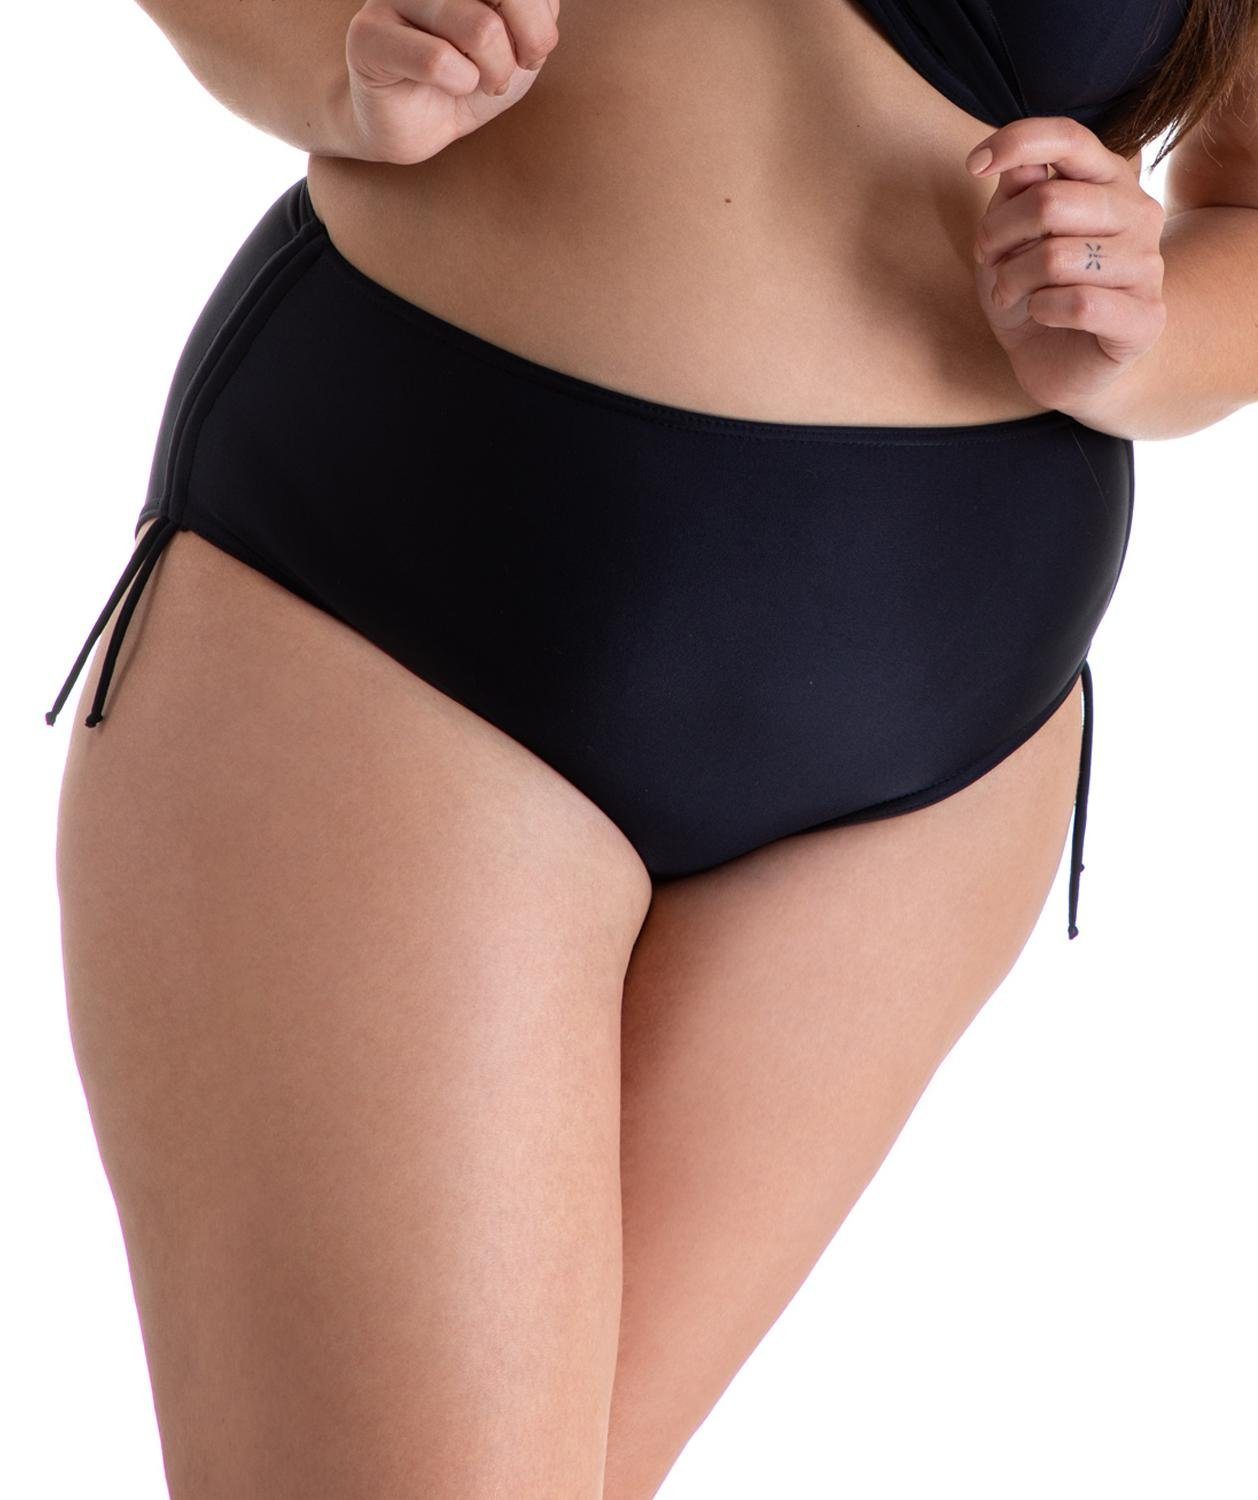 Aquarti Bikini-Hose Aquarti Damen und Schnüren Raffung Schwarz Bikinihose mit